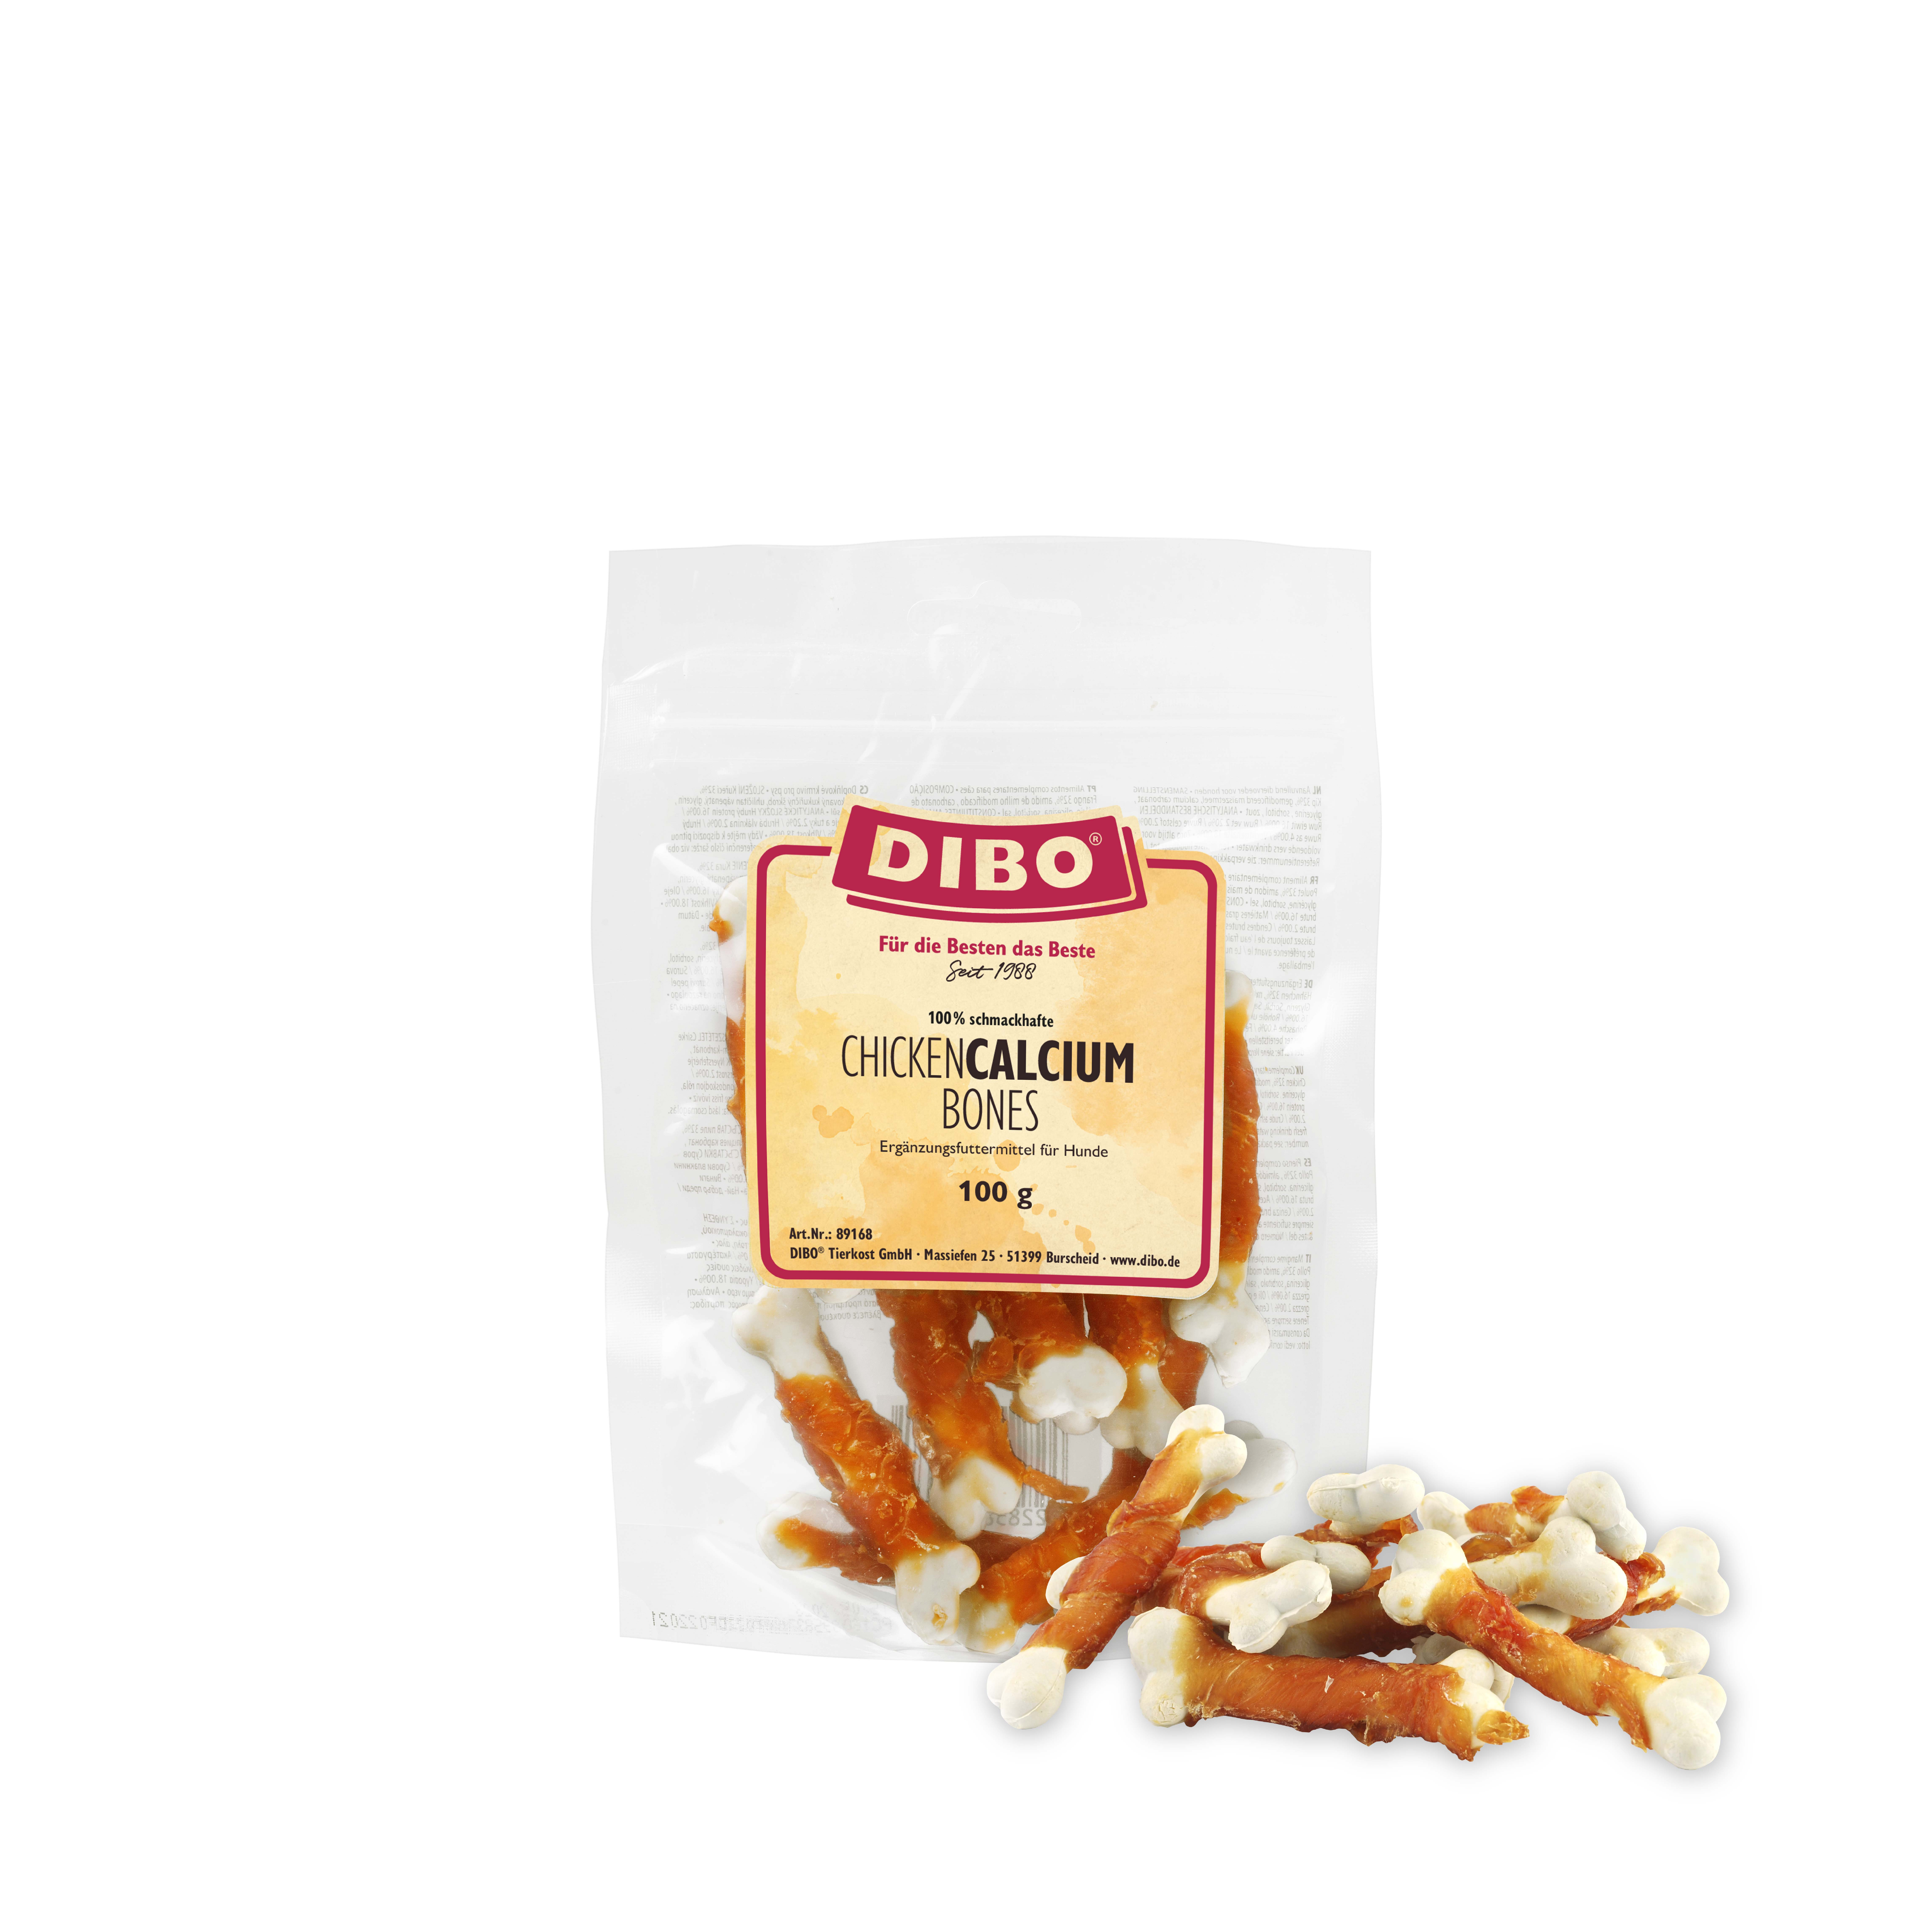 DIBO Chicken Calcium Bones, 100g-Beutel